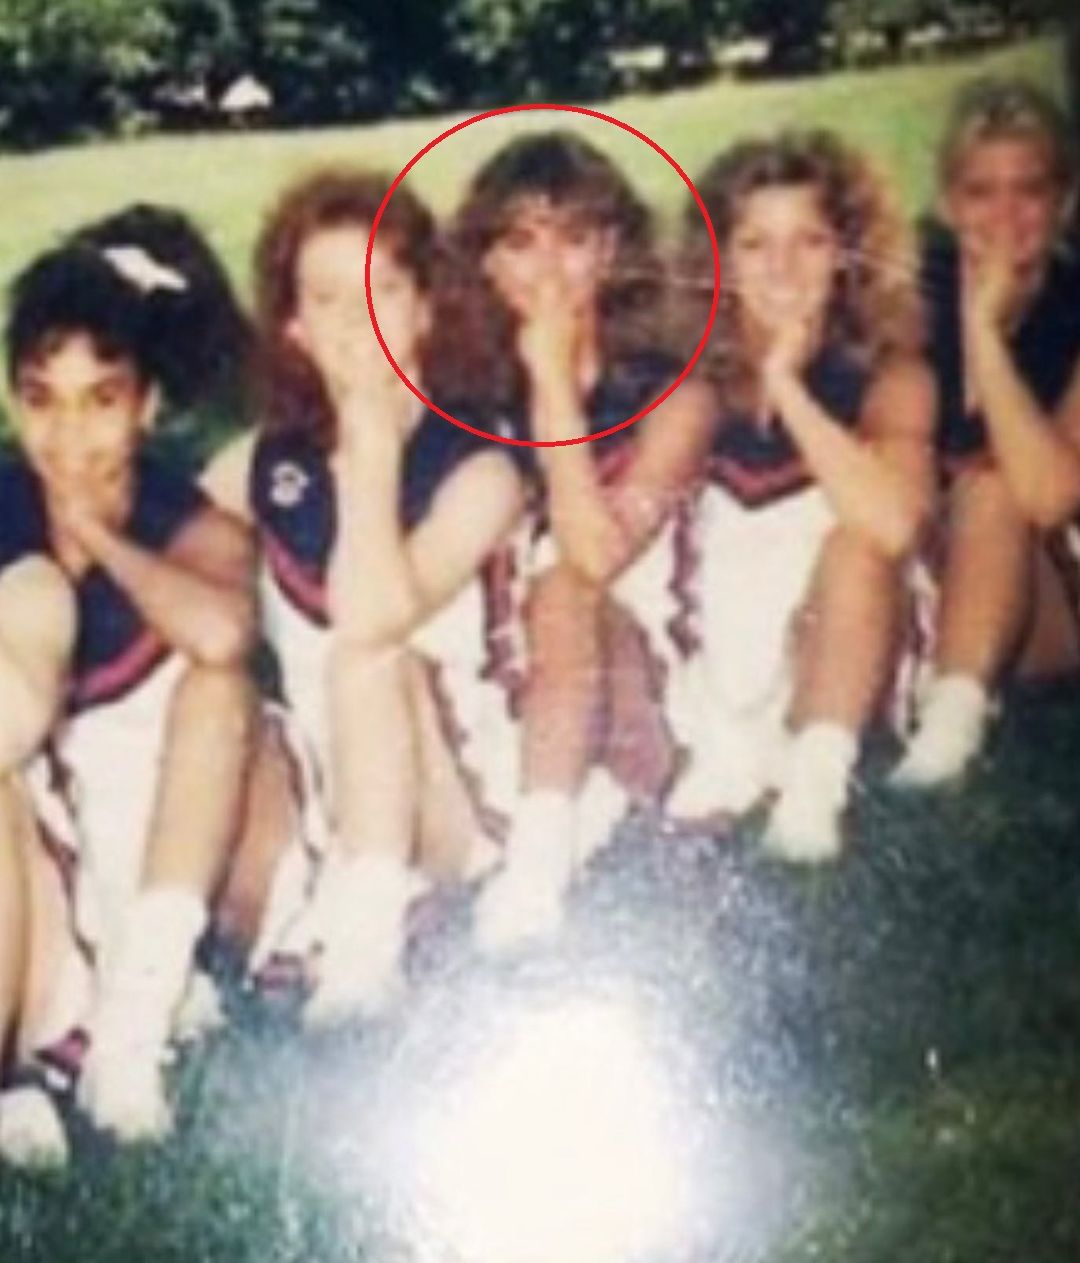 Karen McDougal with her fellow cheerleaders in 1988-89